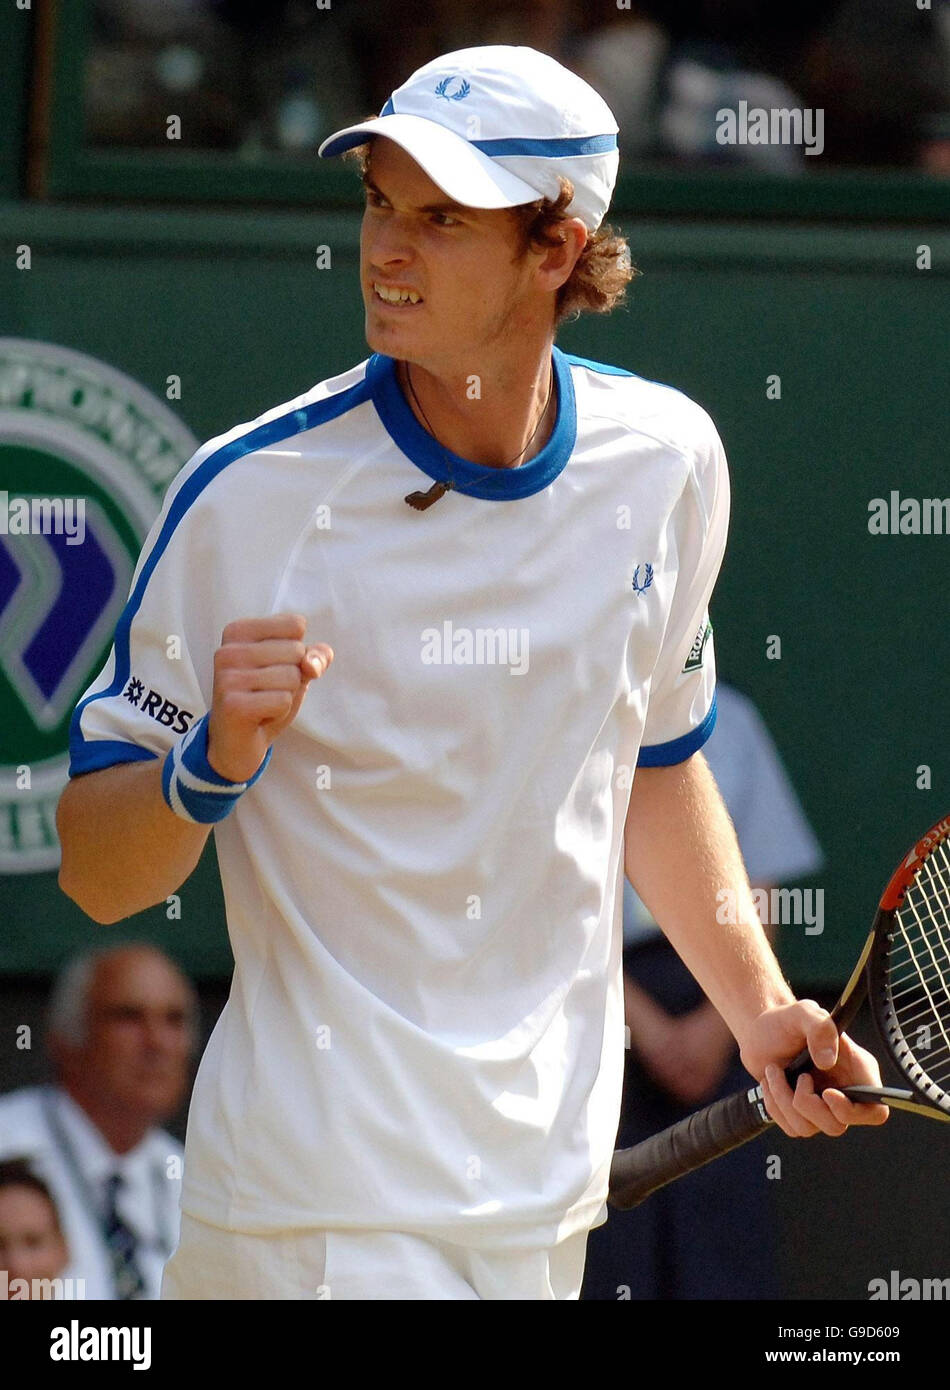 Andy Murray della Gran Bretagna festeggia un punto durante il secondo round dei Campionati di tennis All England Lawn a Wimbledon. Foto Stock